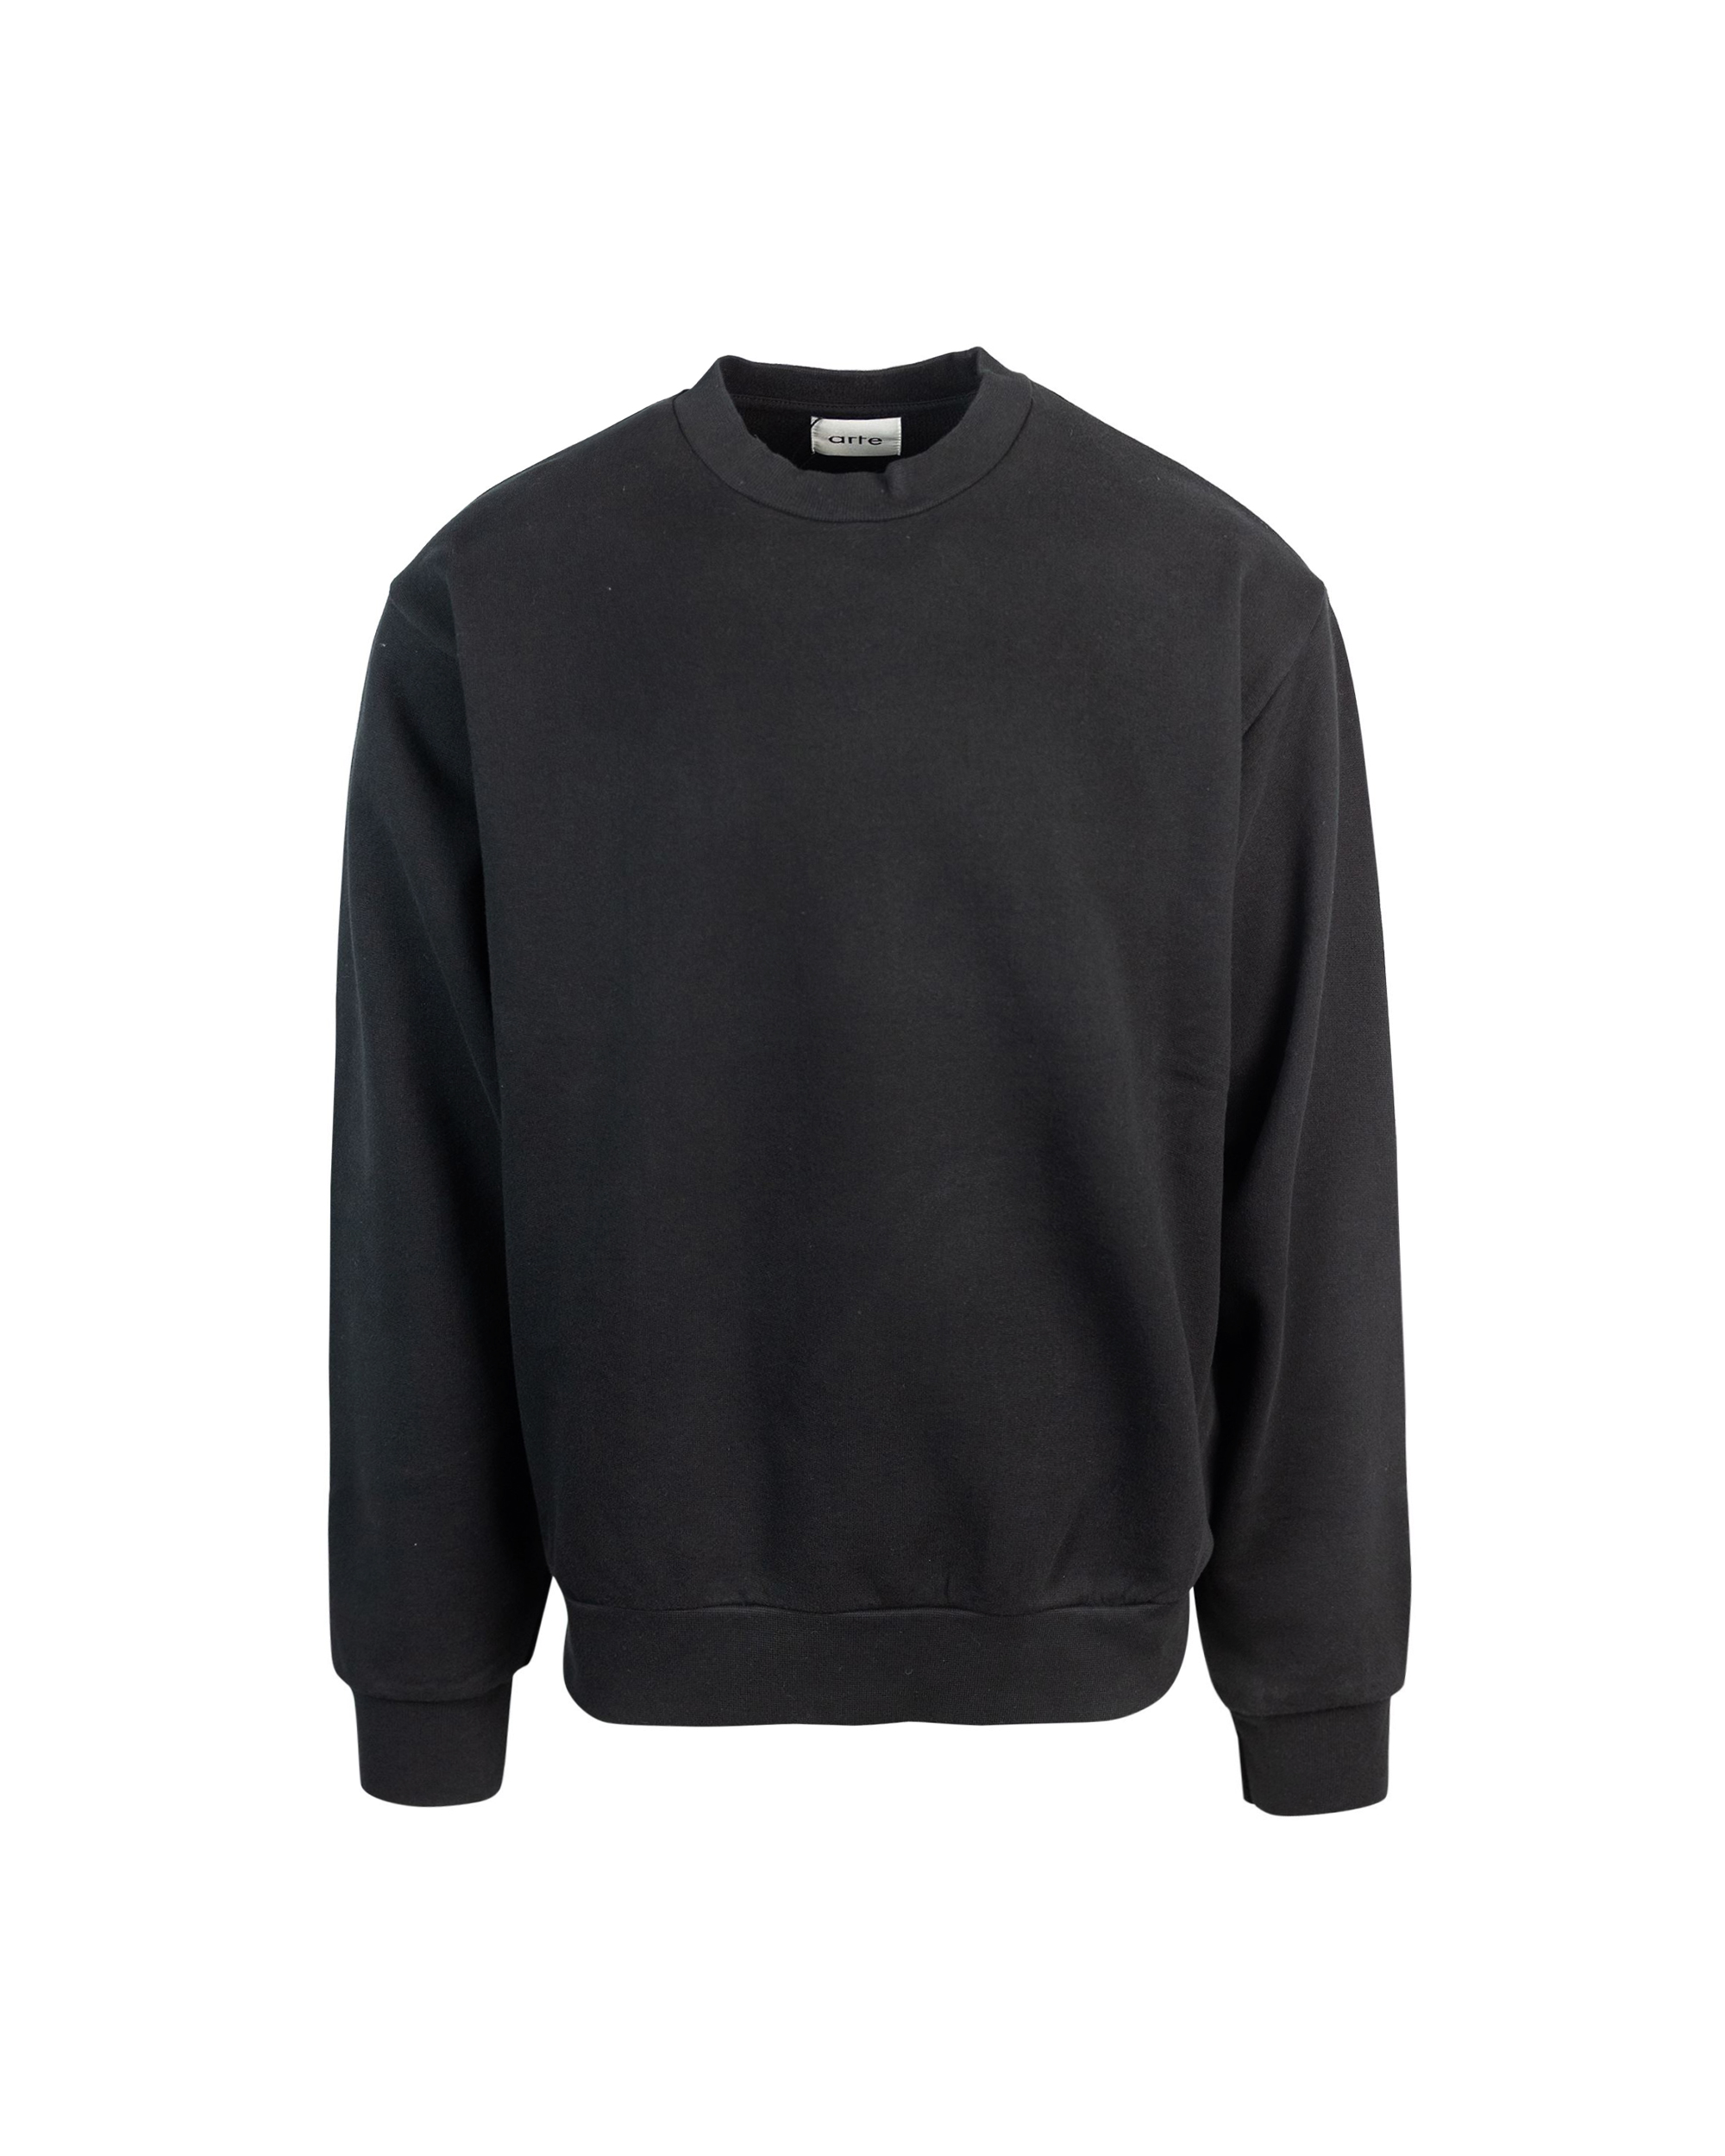 Shop Arte Antwerp Black Pixel Sweatshirt